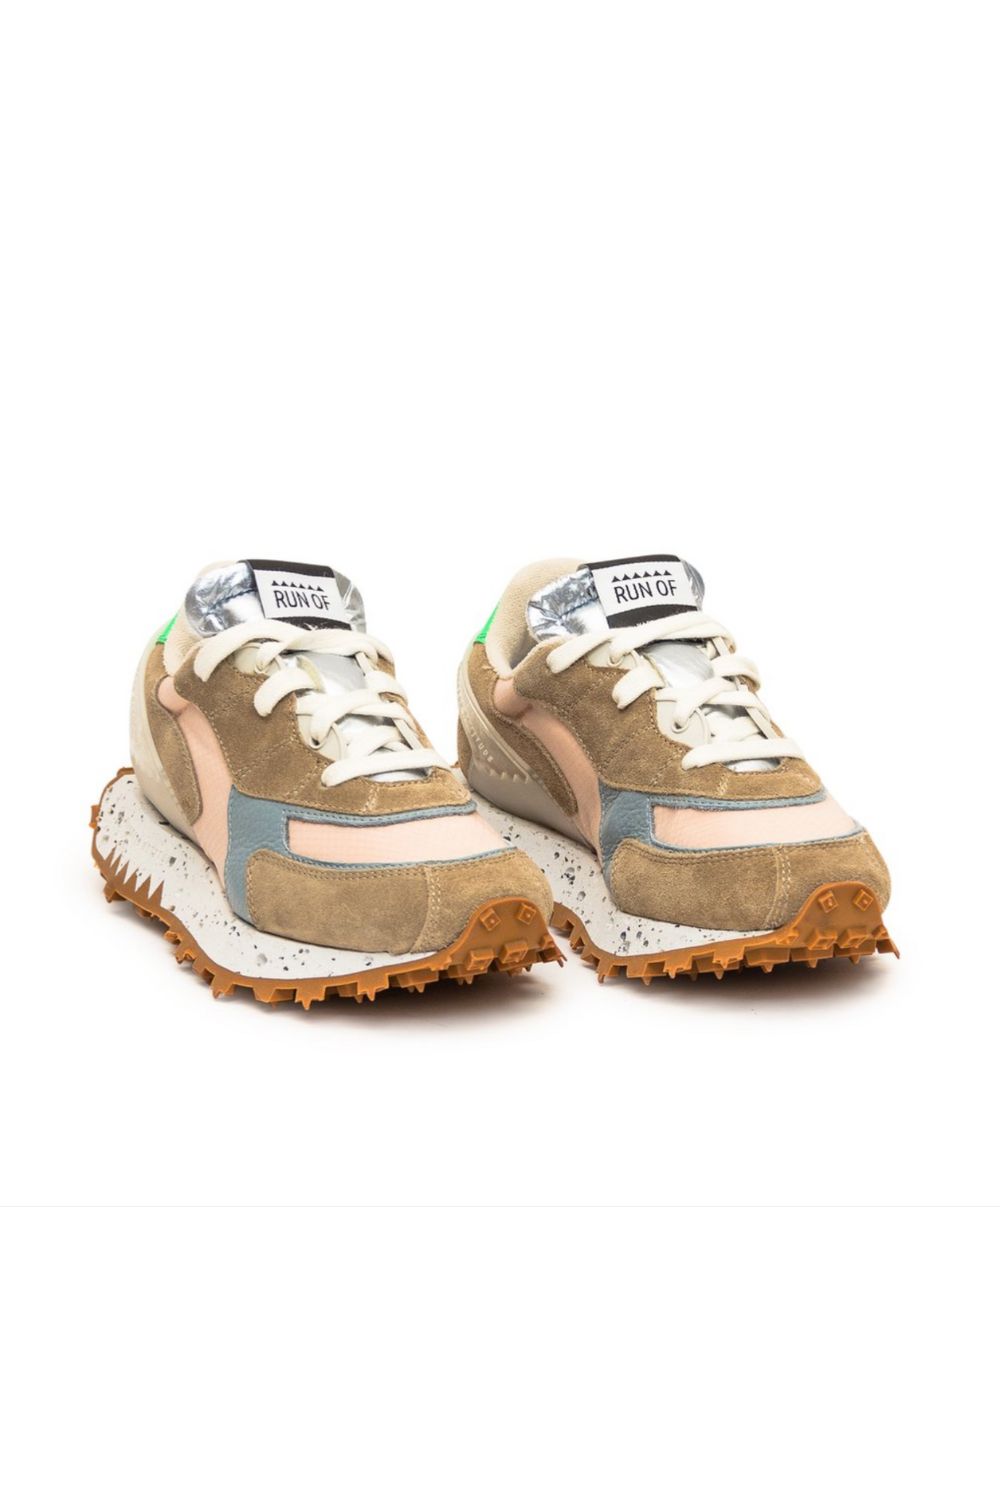 Run Of - Ilda Sneakers